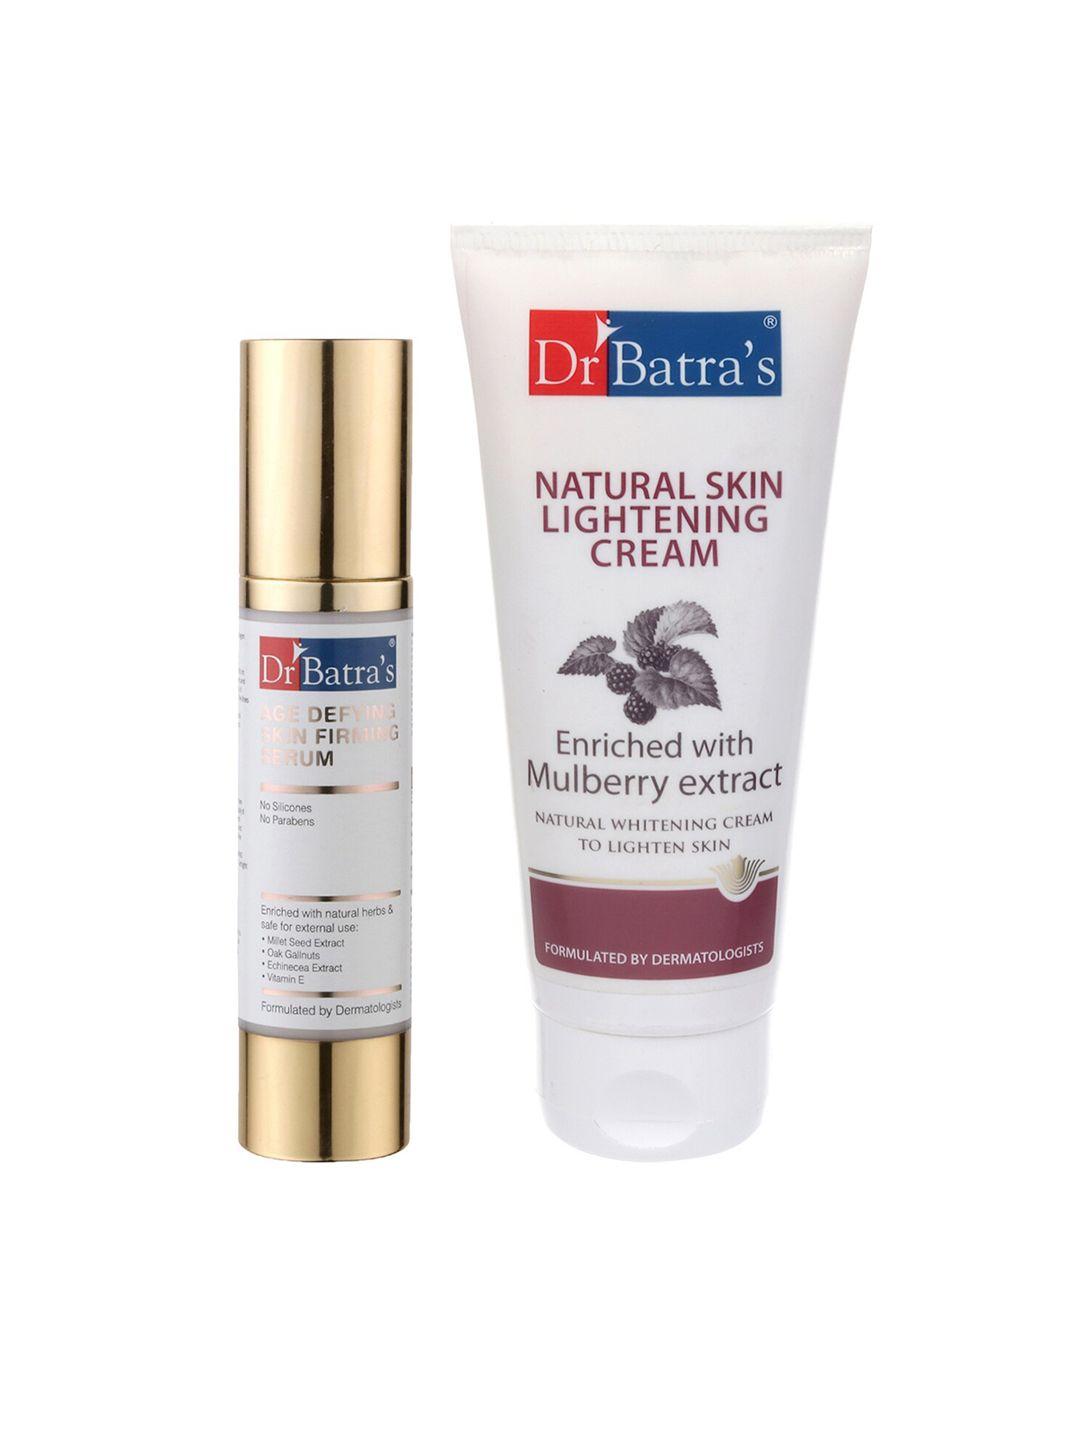 dr. batras age defying skin firming serum & natural skin lightening cream 150g